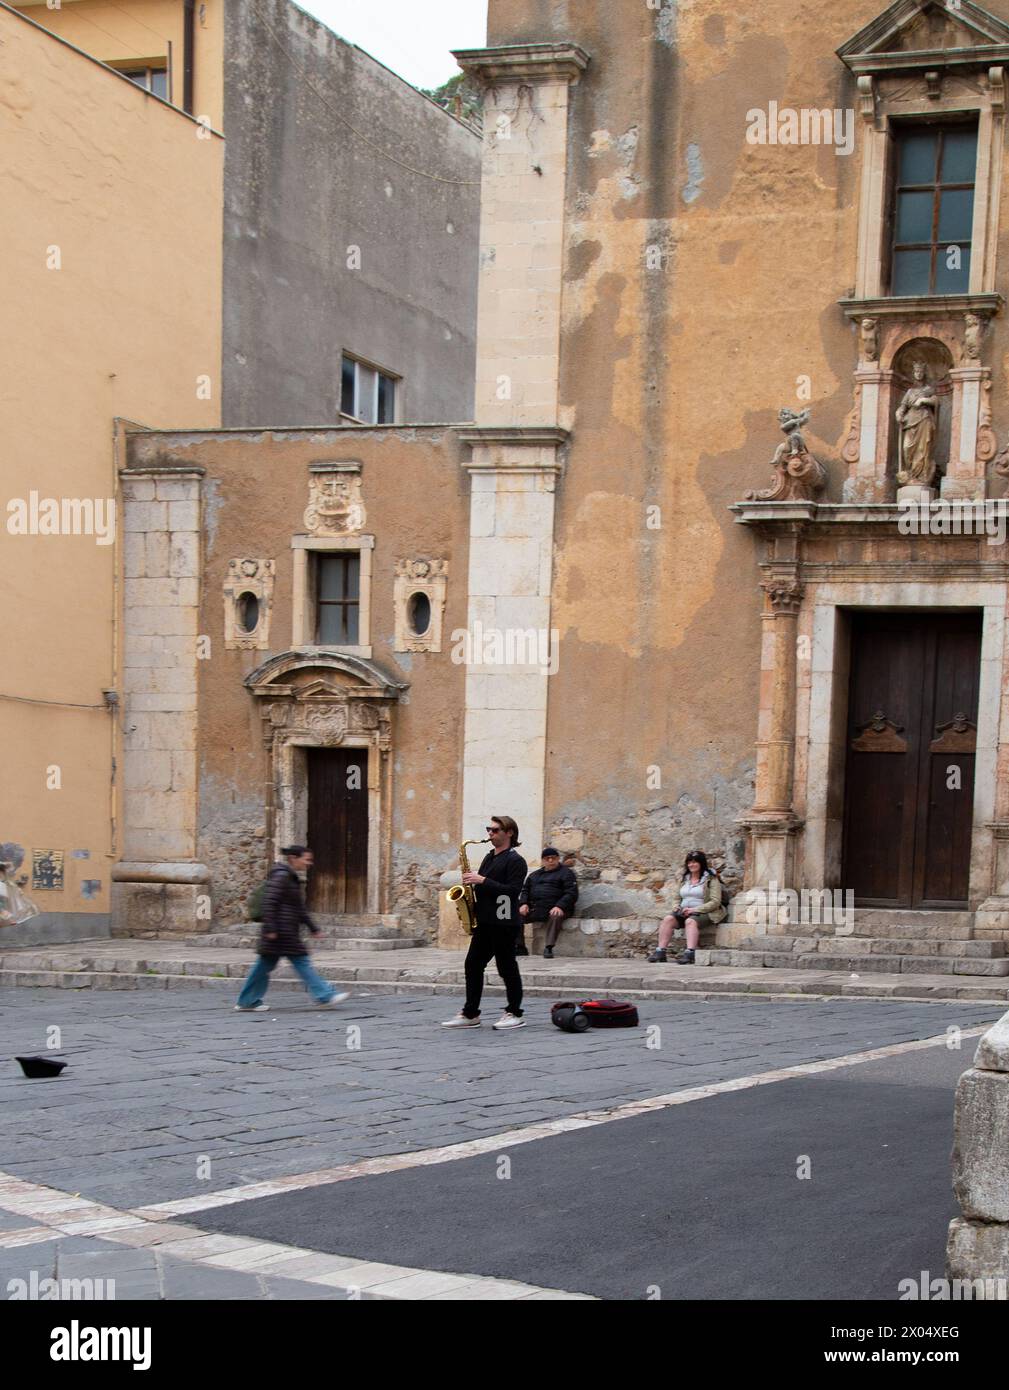 Un musicien de rue joue sur une place dans la ville sicilienne de Taormina, en Italie Banque D'Images